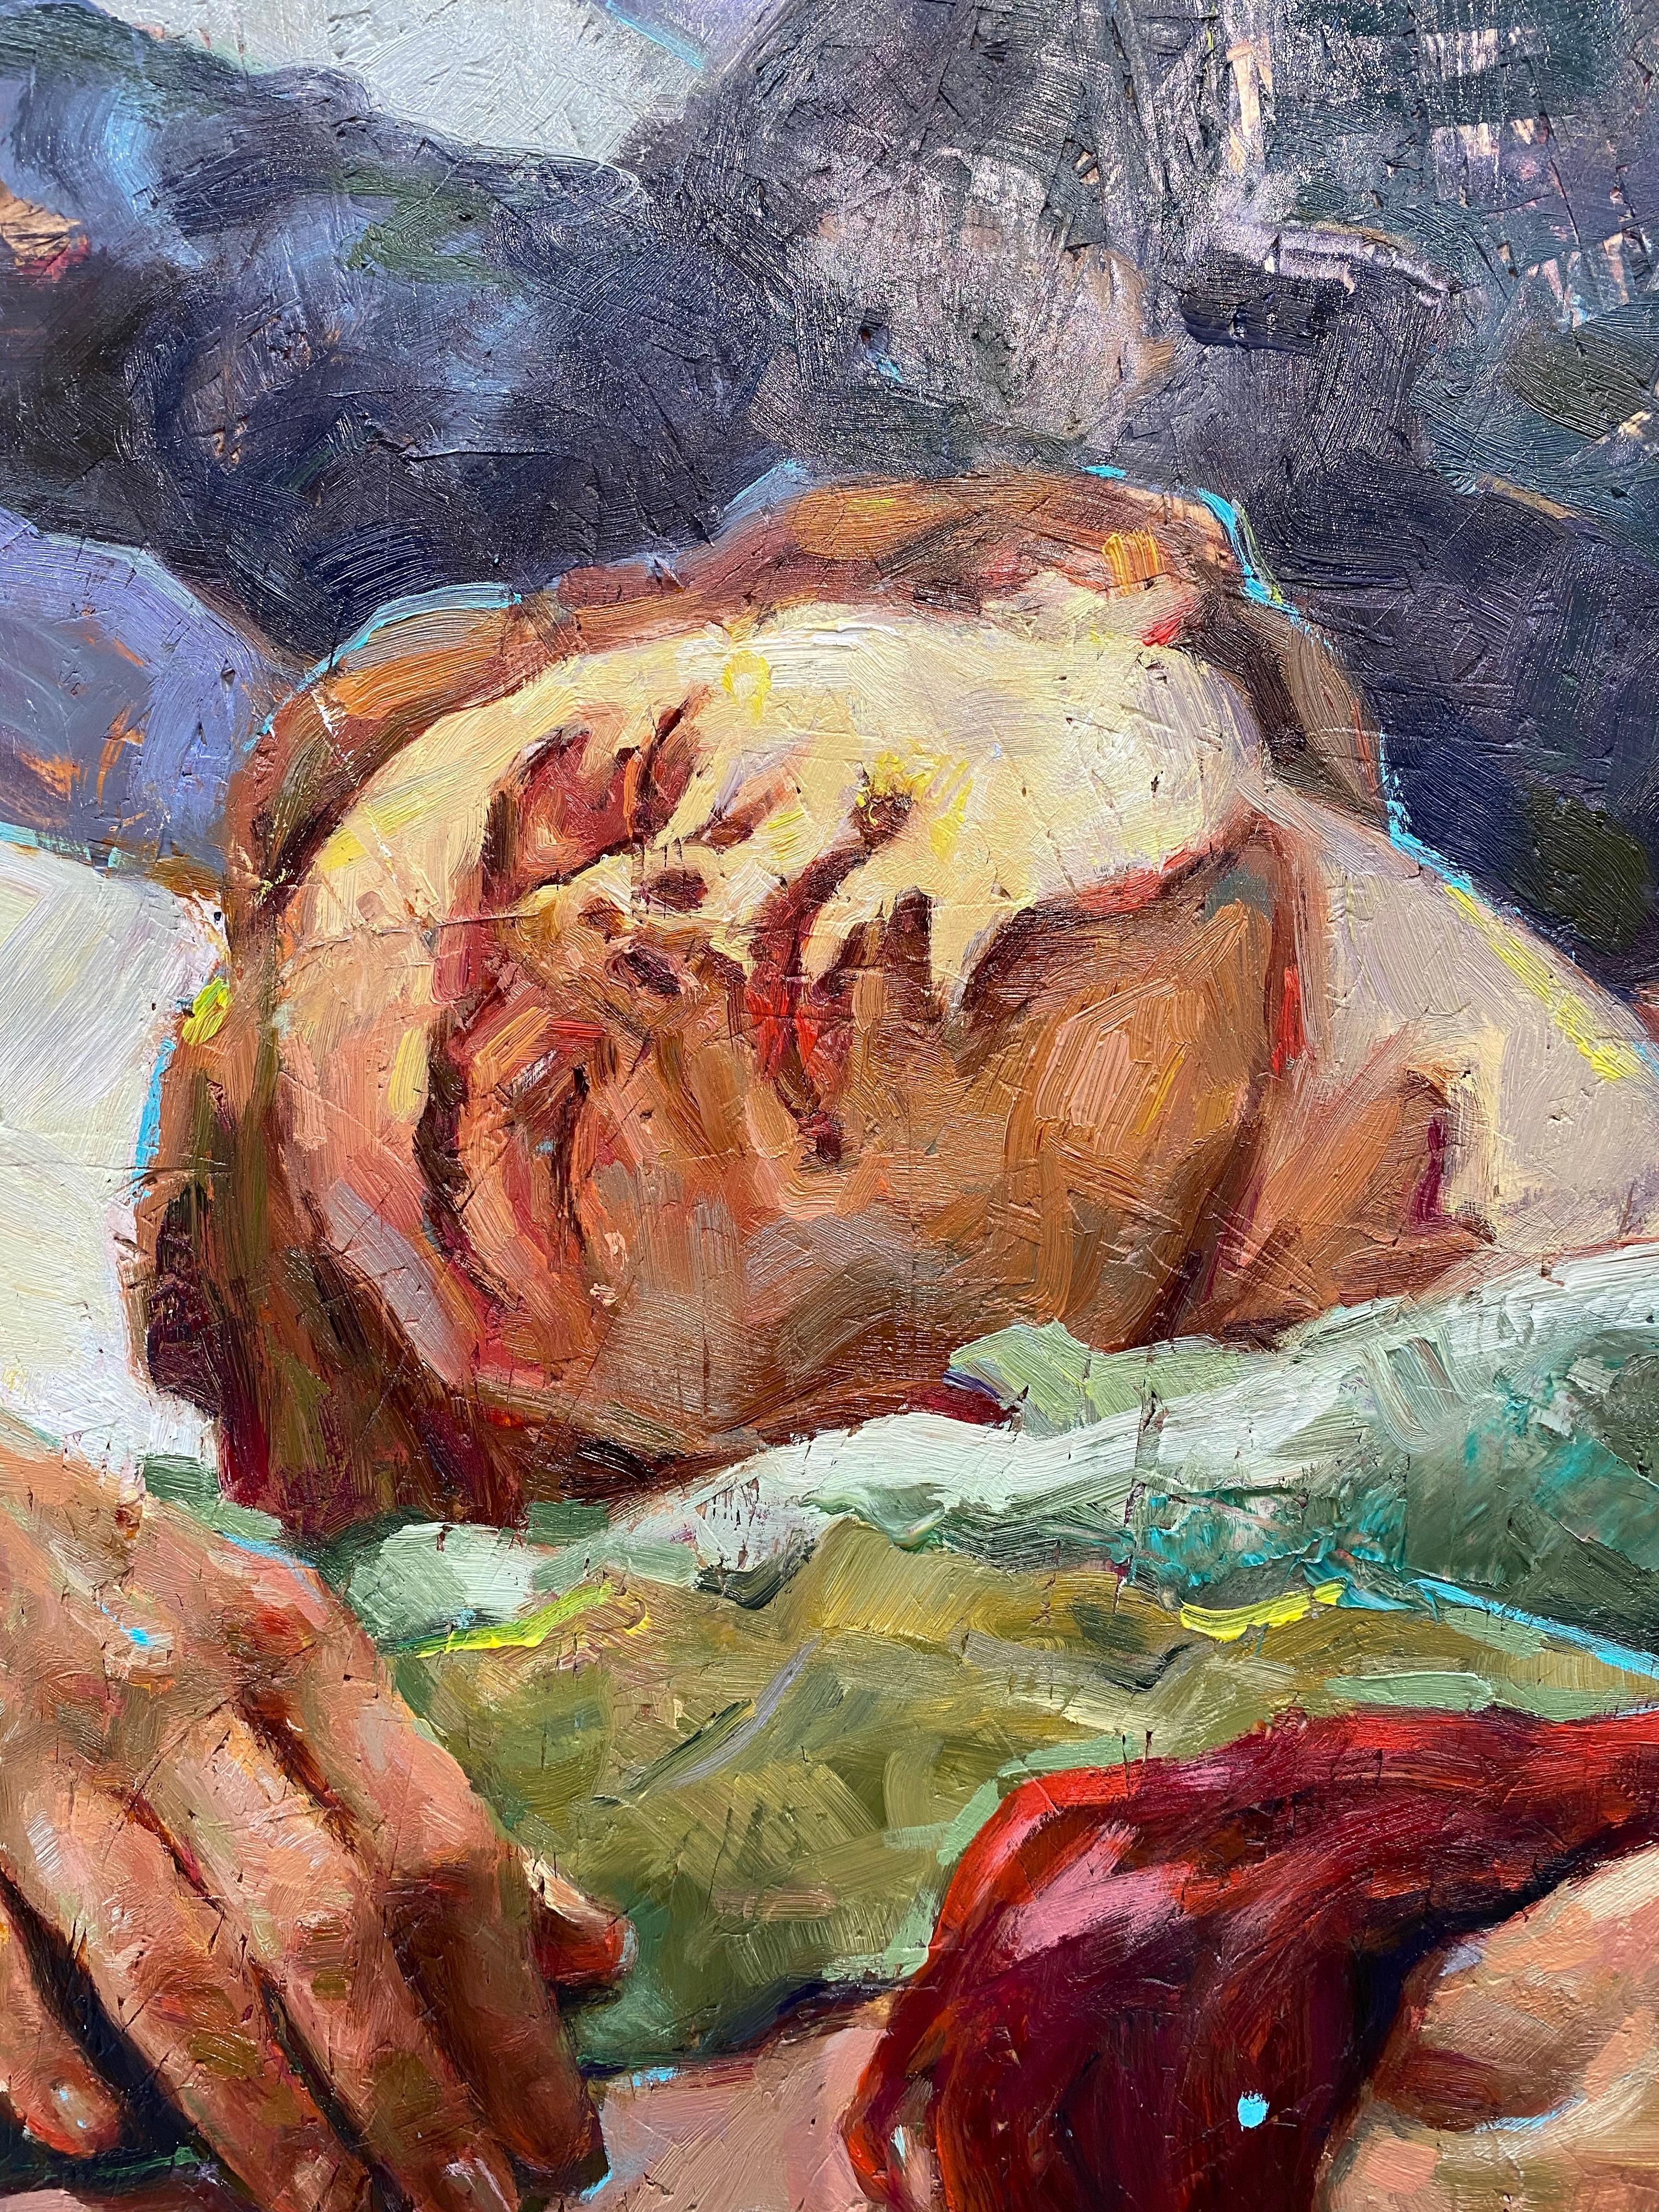 Moonage daydream-21ème siècle Peinture contemporaine d'amis endormis ensemble - Painting de Tania Rivilis